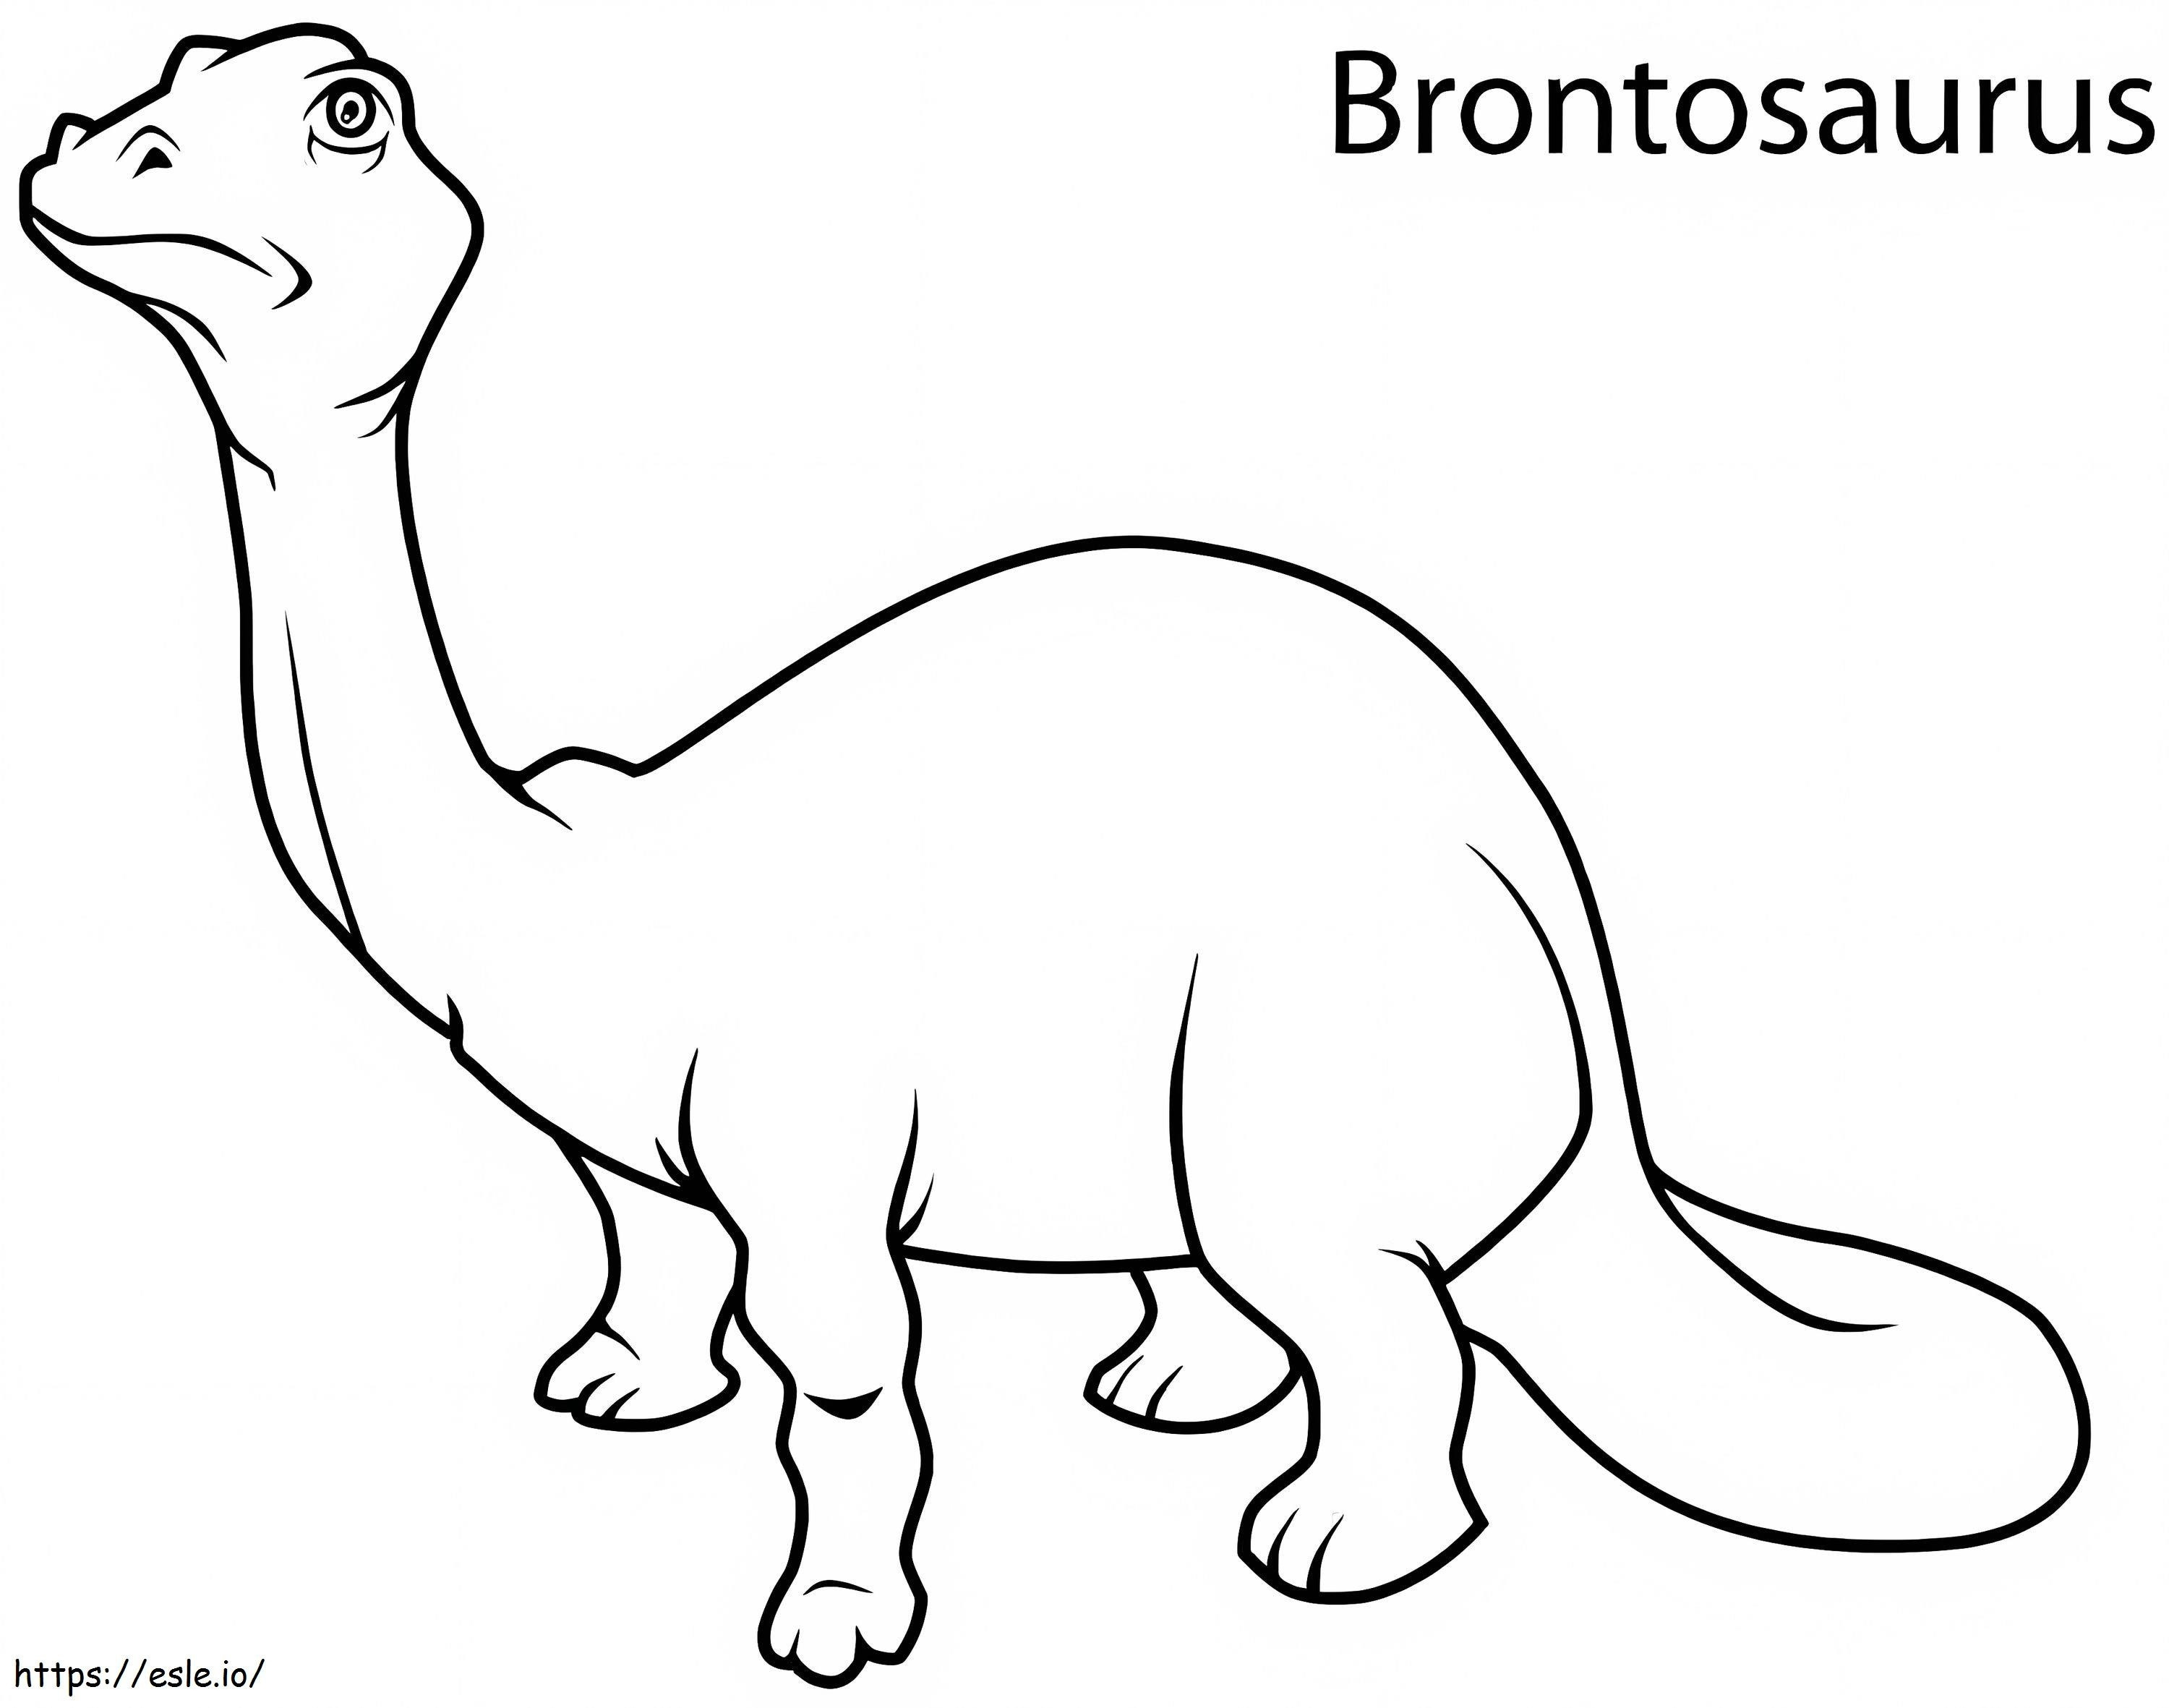 Coloriage Brontosaure de base à imprimer dessin